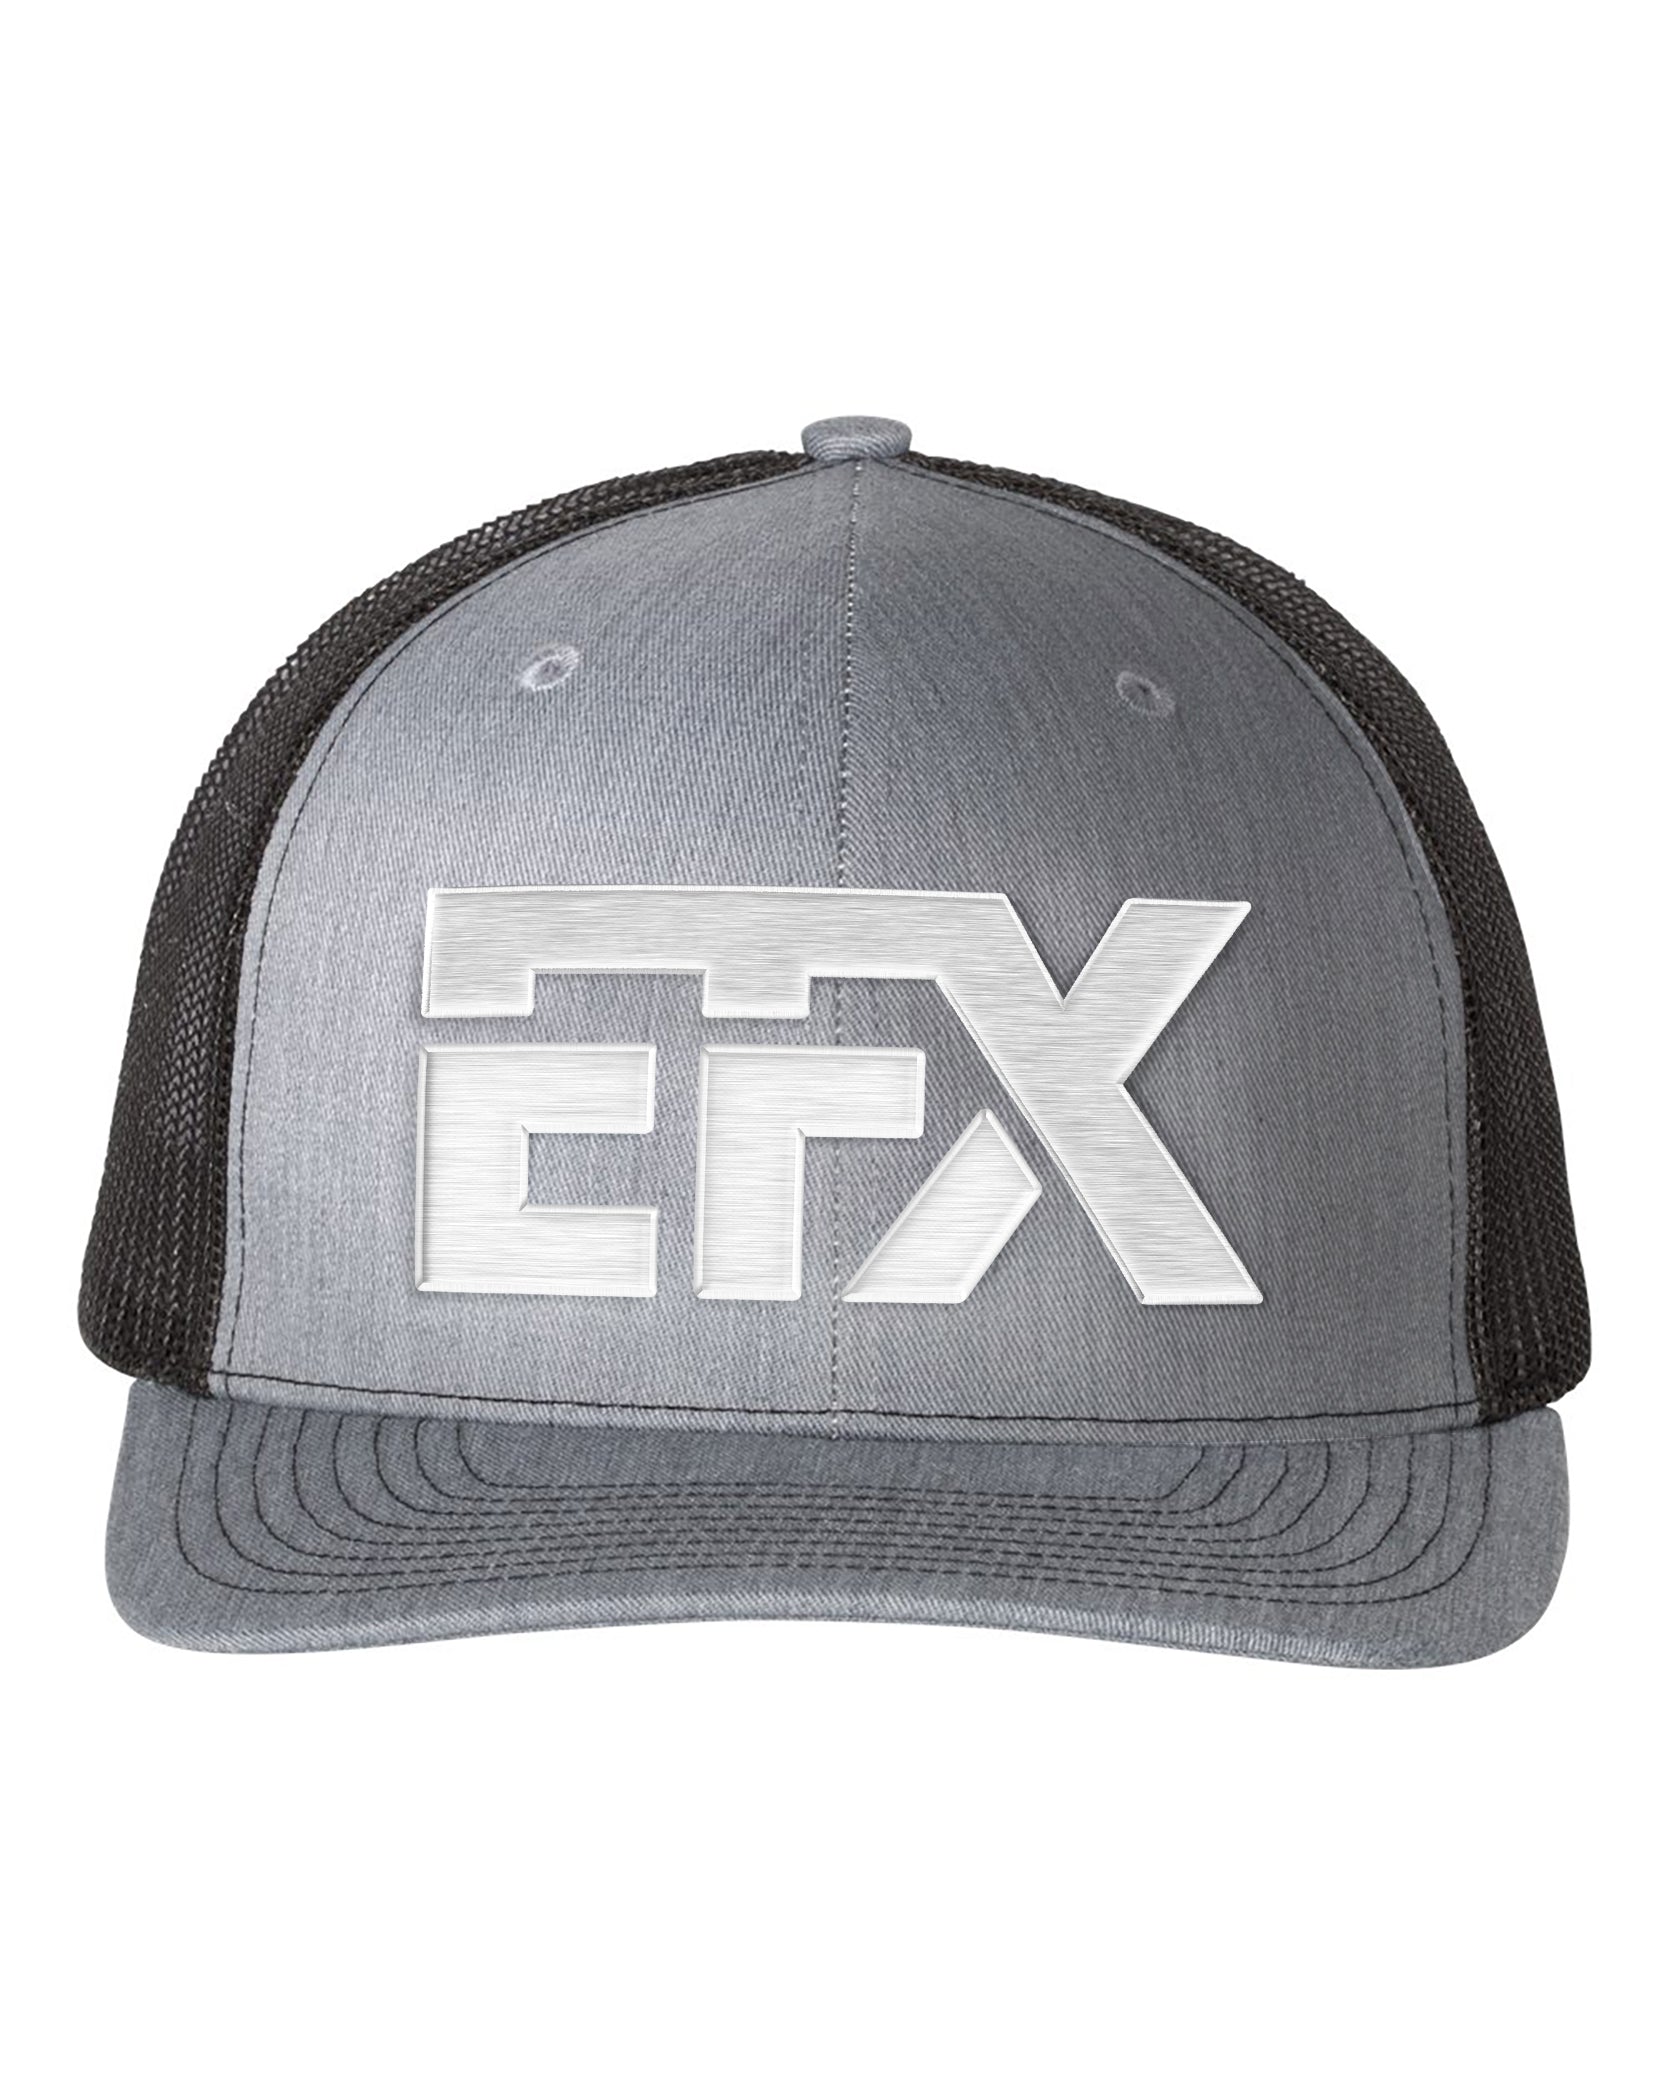 Logo-Short-White on Black & Gray Hat